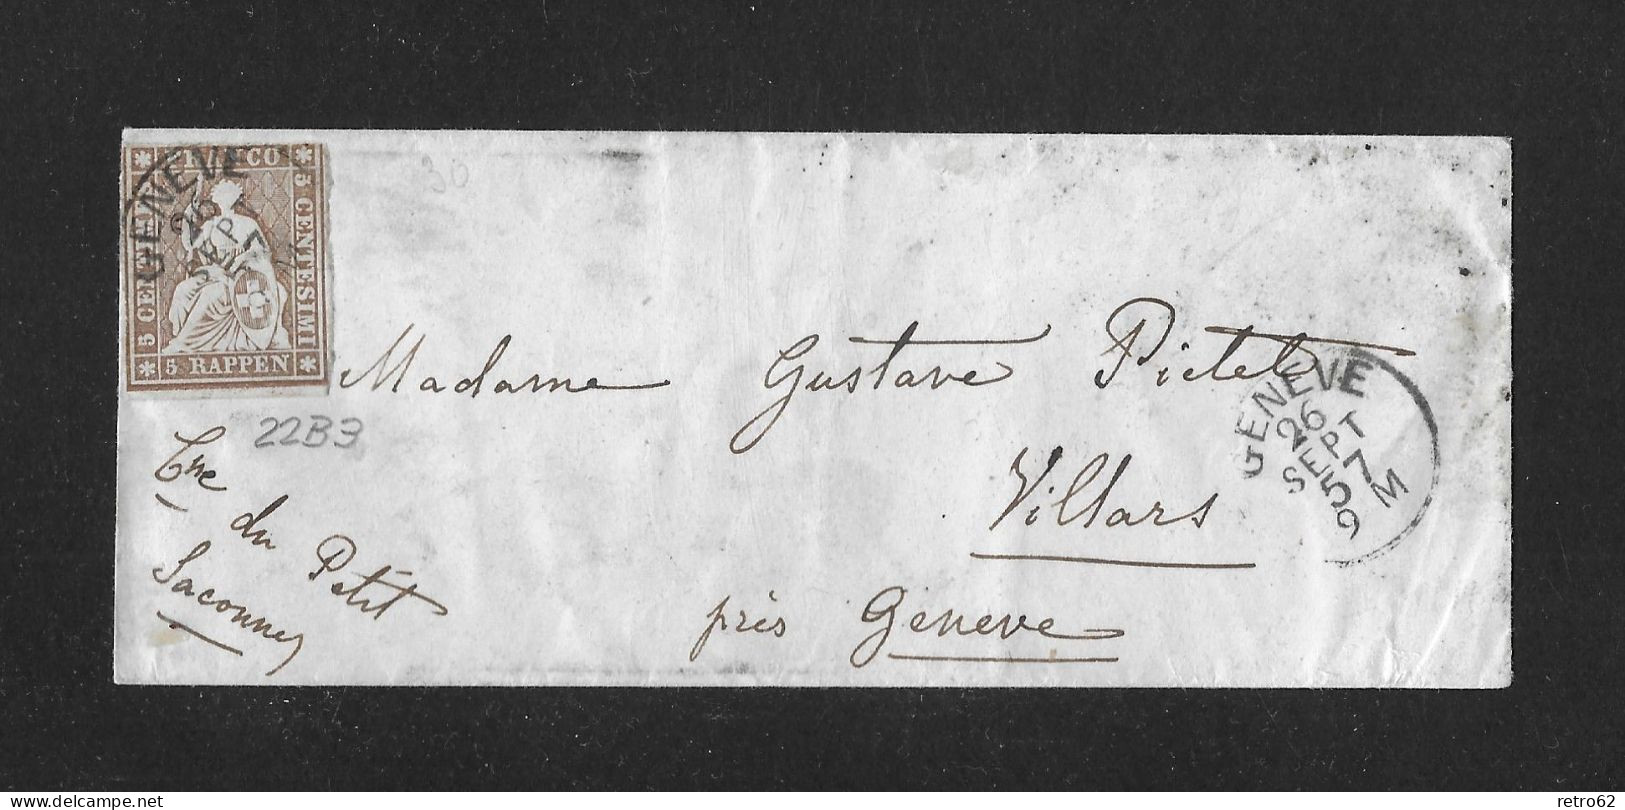 1857 HEIMAT GENÈVE ► Briefumschlag Von Genève Nach Villars    ►SBK-22B3 Grnève 26 SEPT 57 Guter Schnitt◄ - Lettres & Documents